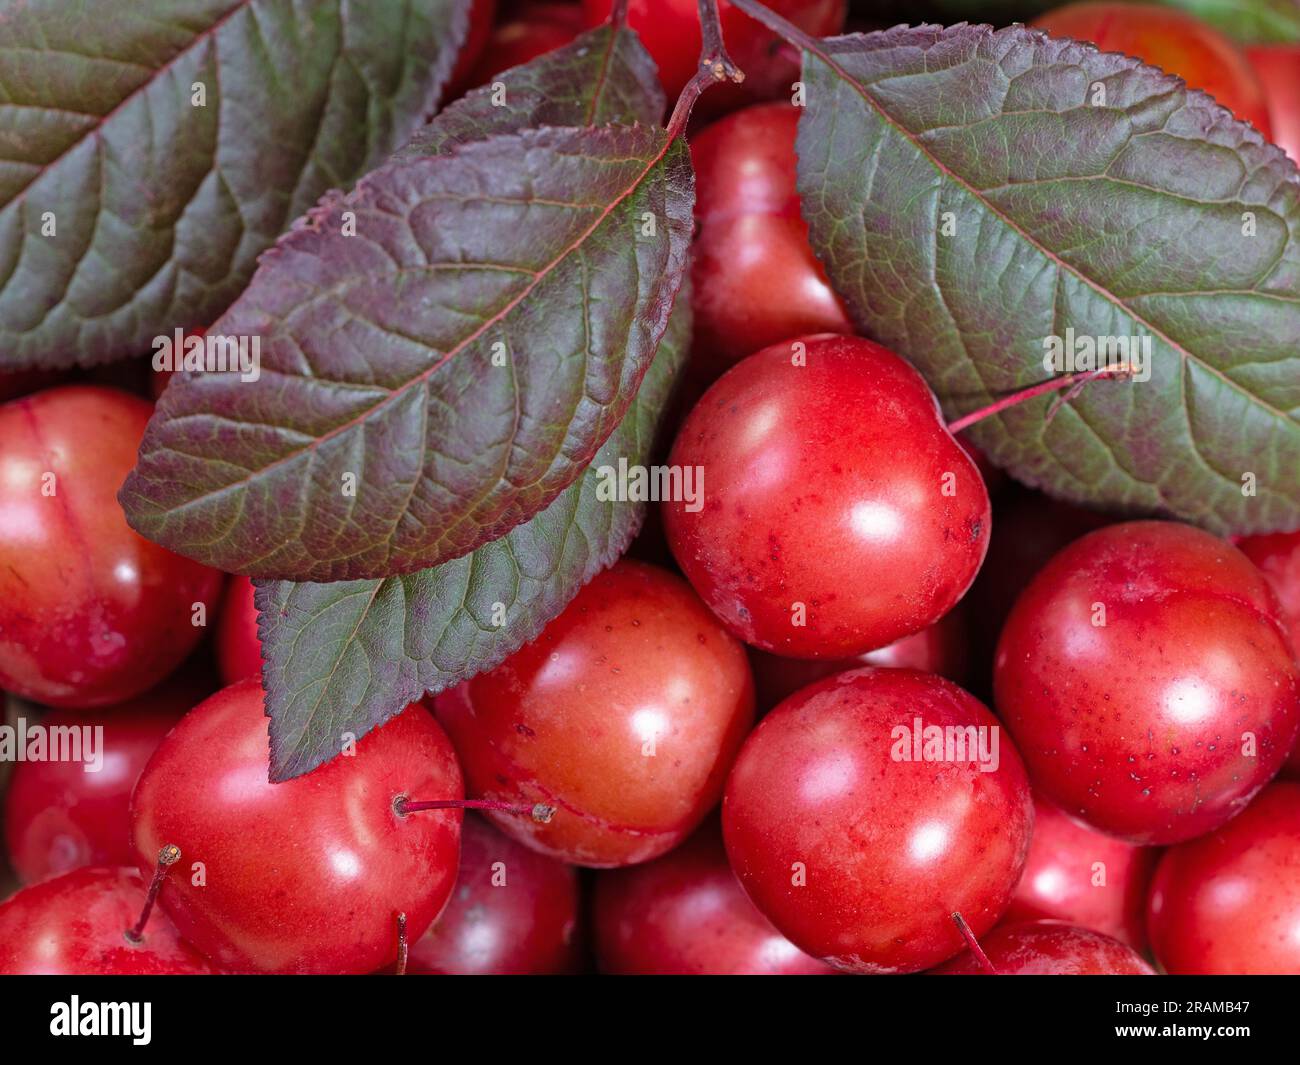 Cherry plums, Prunus cerasifera, in a closeup Stock Photo